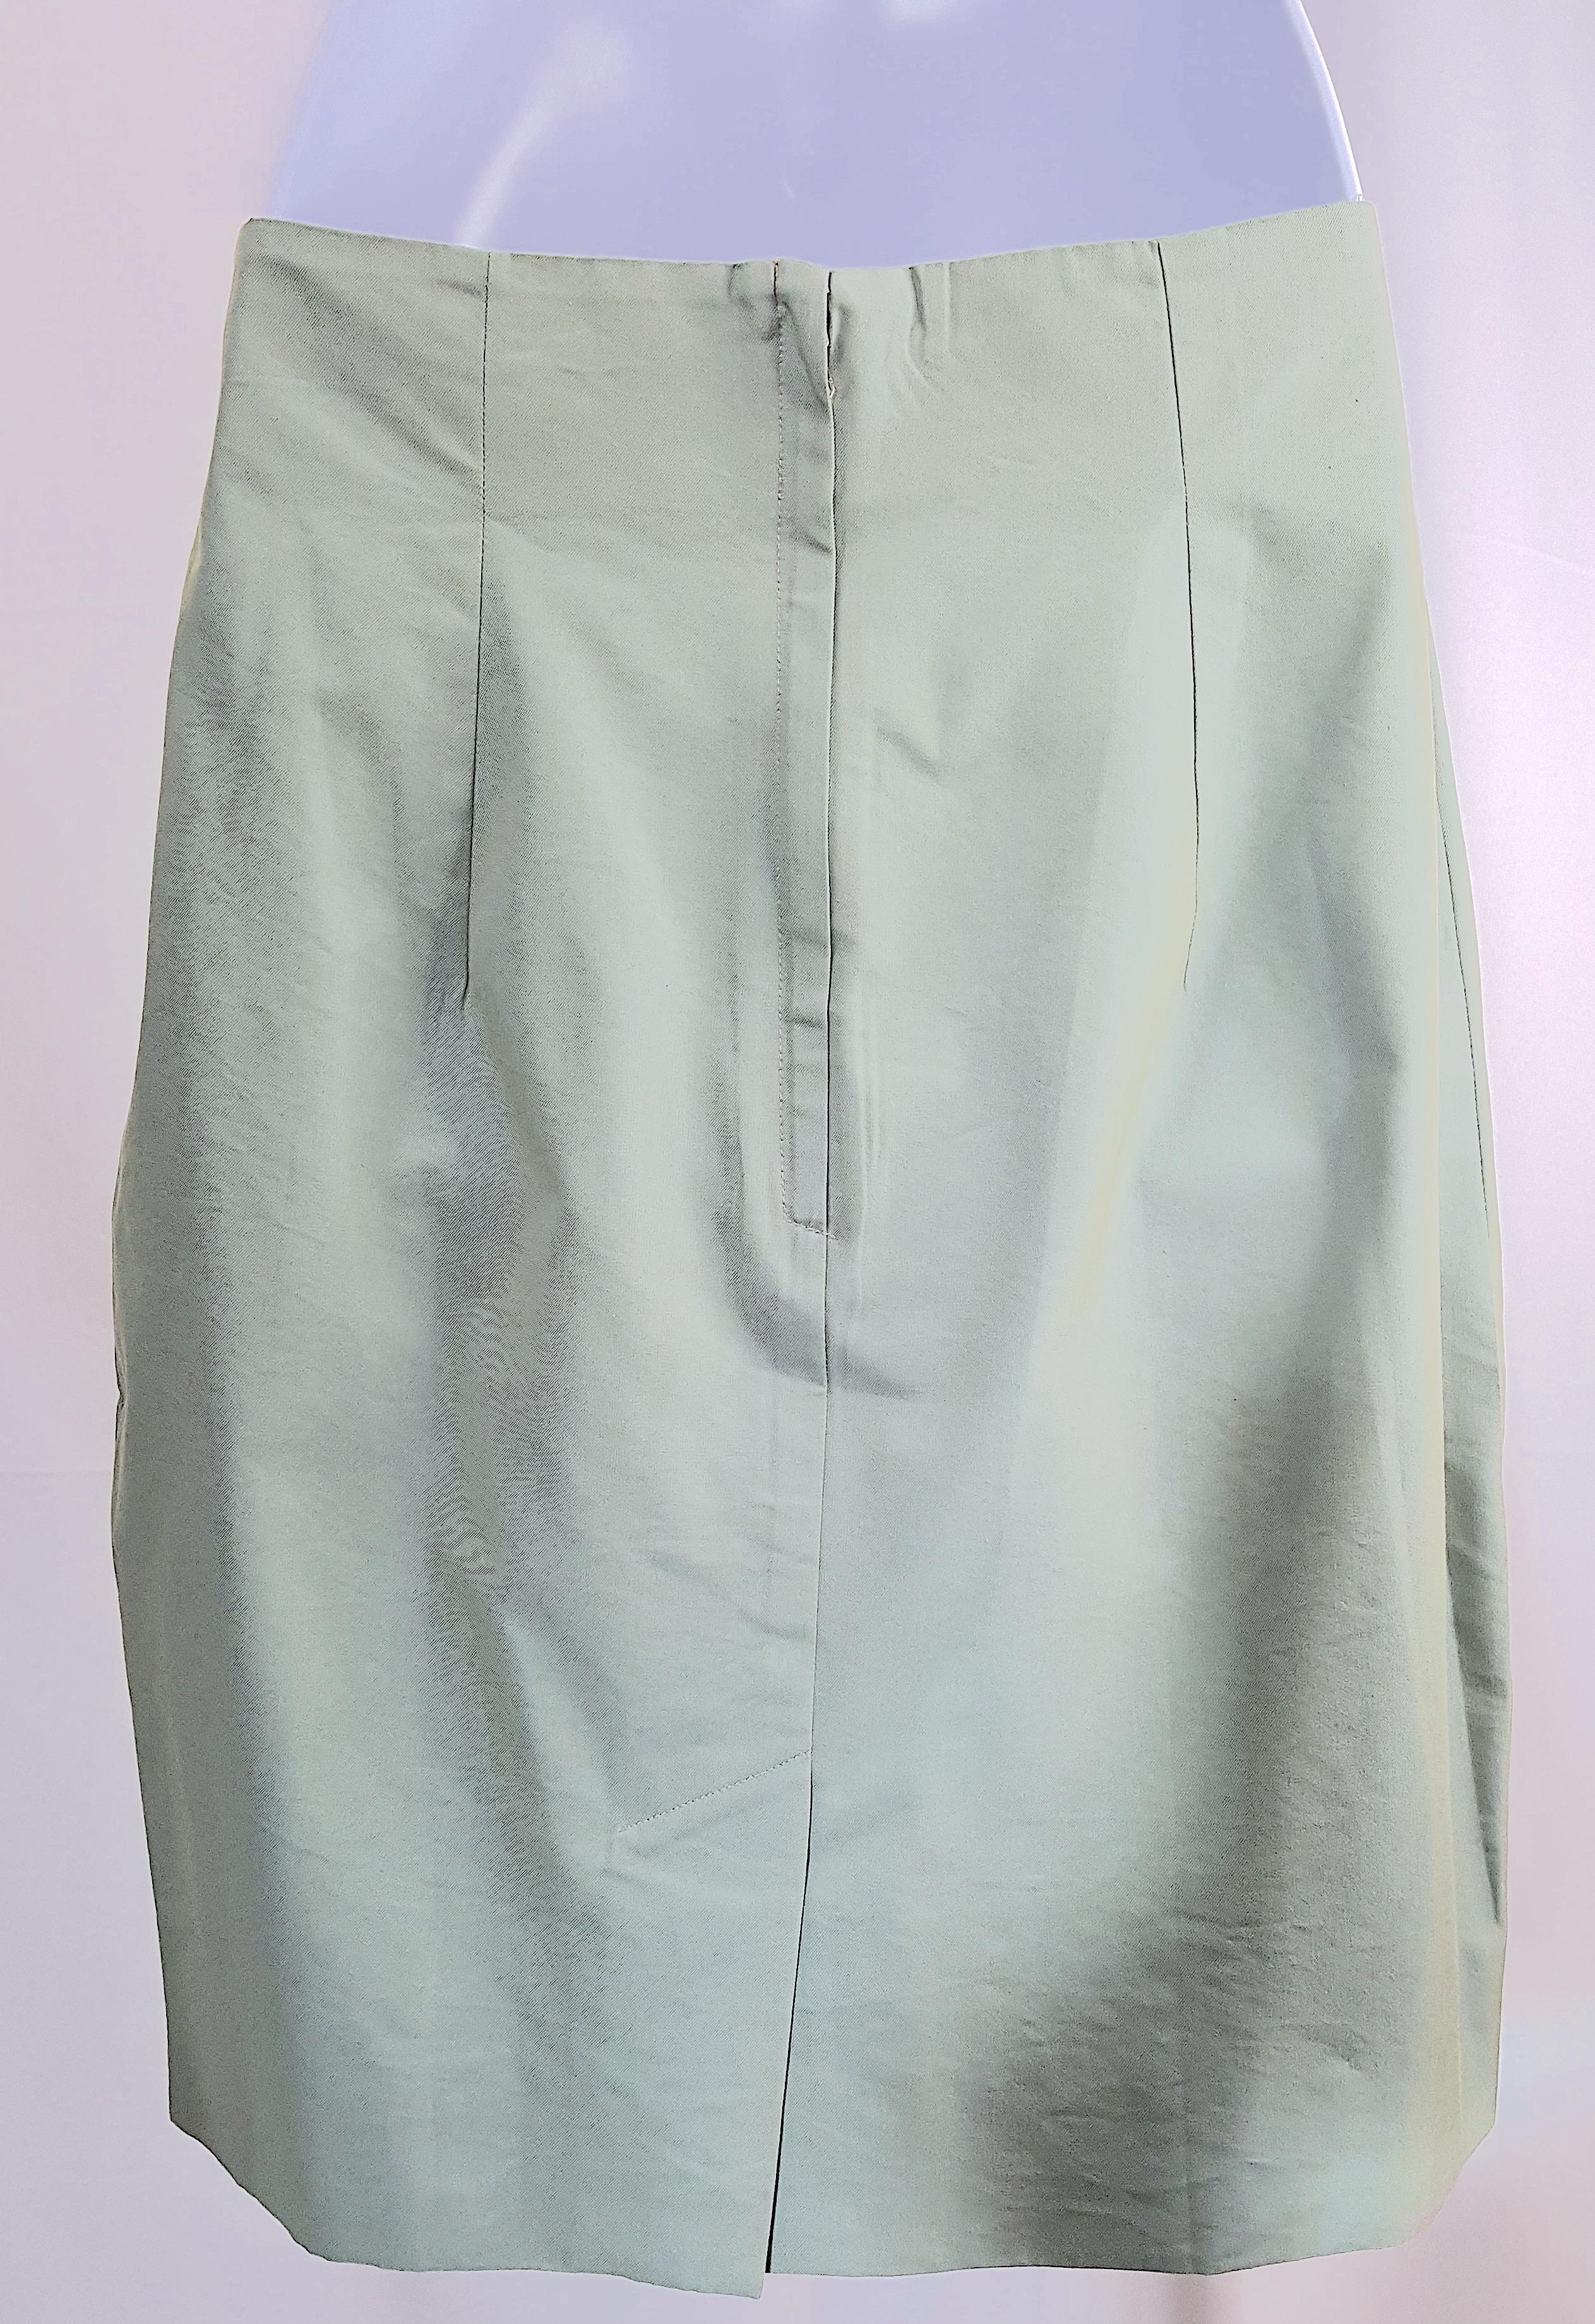 1991 RunwayLook1 KatharineHamnett IridescentGreen FeltedCollar Fitted Skirt Suit For Sale 6